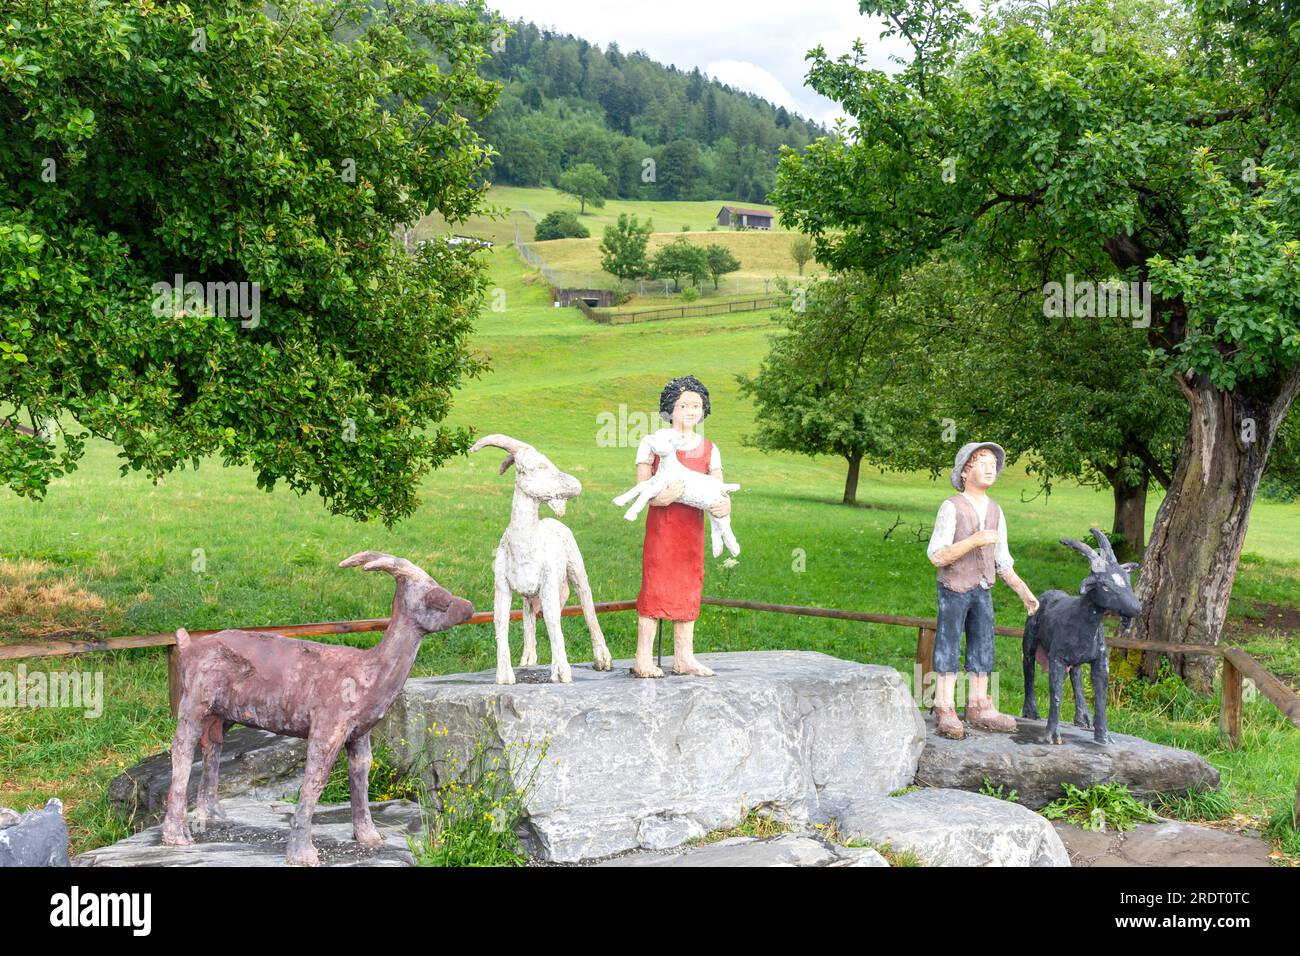 Statue of Heidi and Peter with goats in Heidiland (children's book), Bündner Herrschaft, Canton of Graubünden, Switzerland Stock Photo